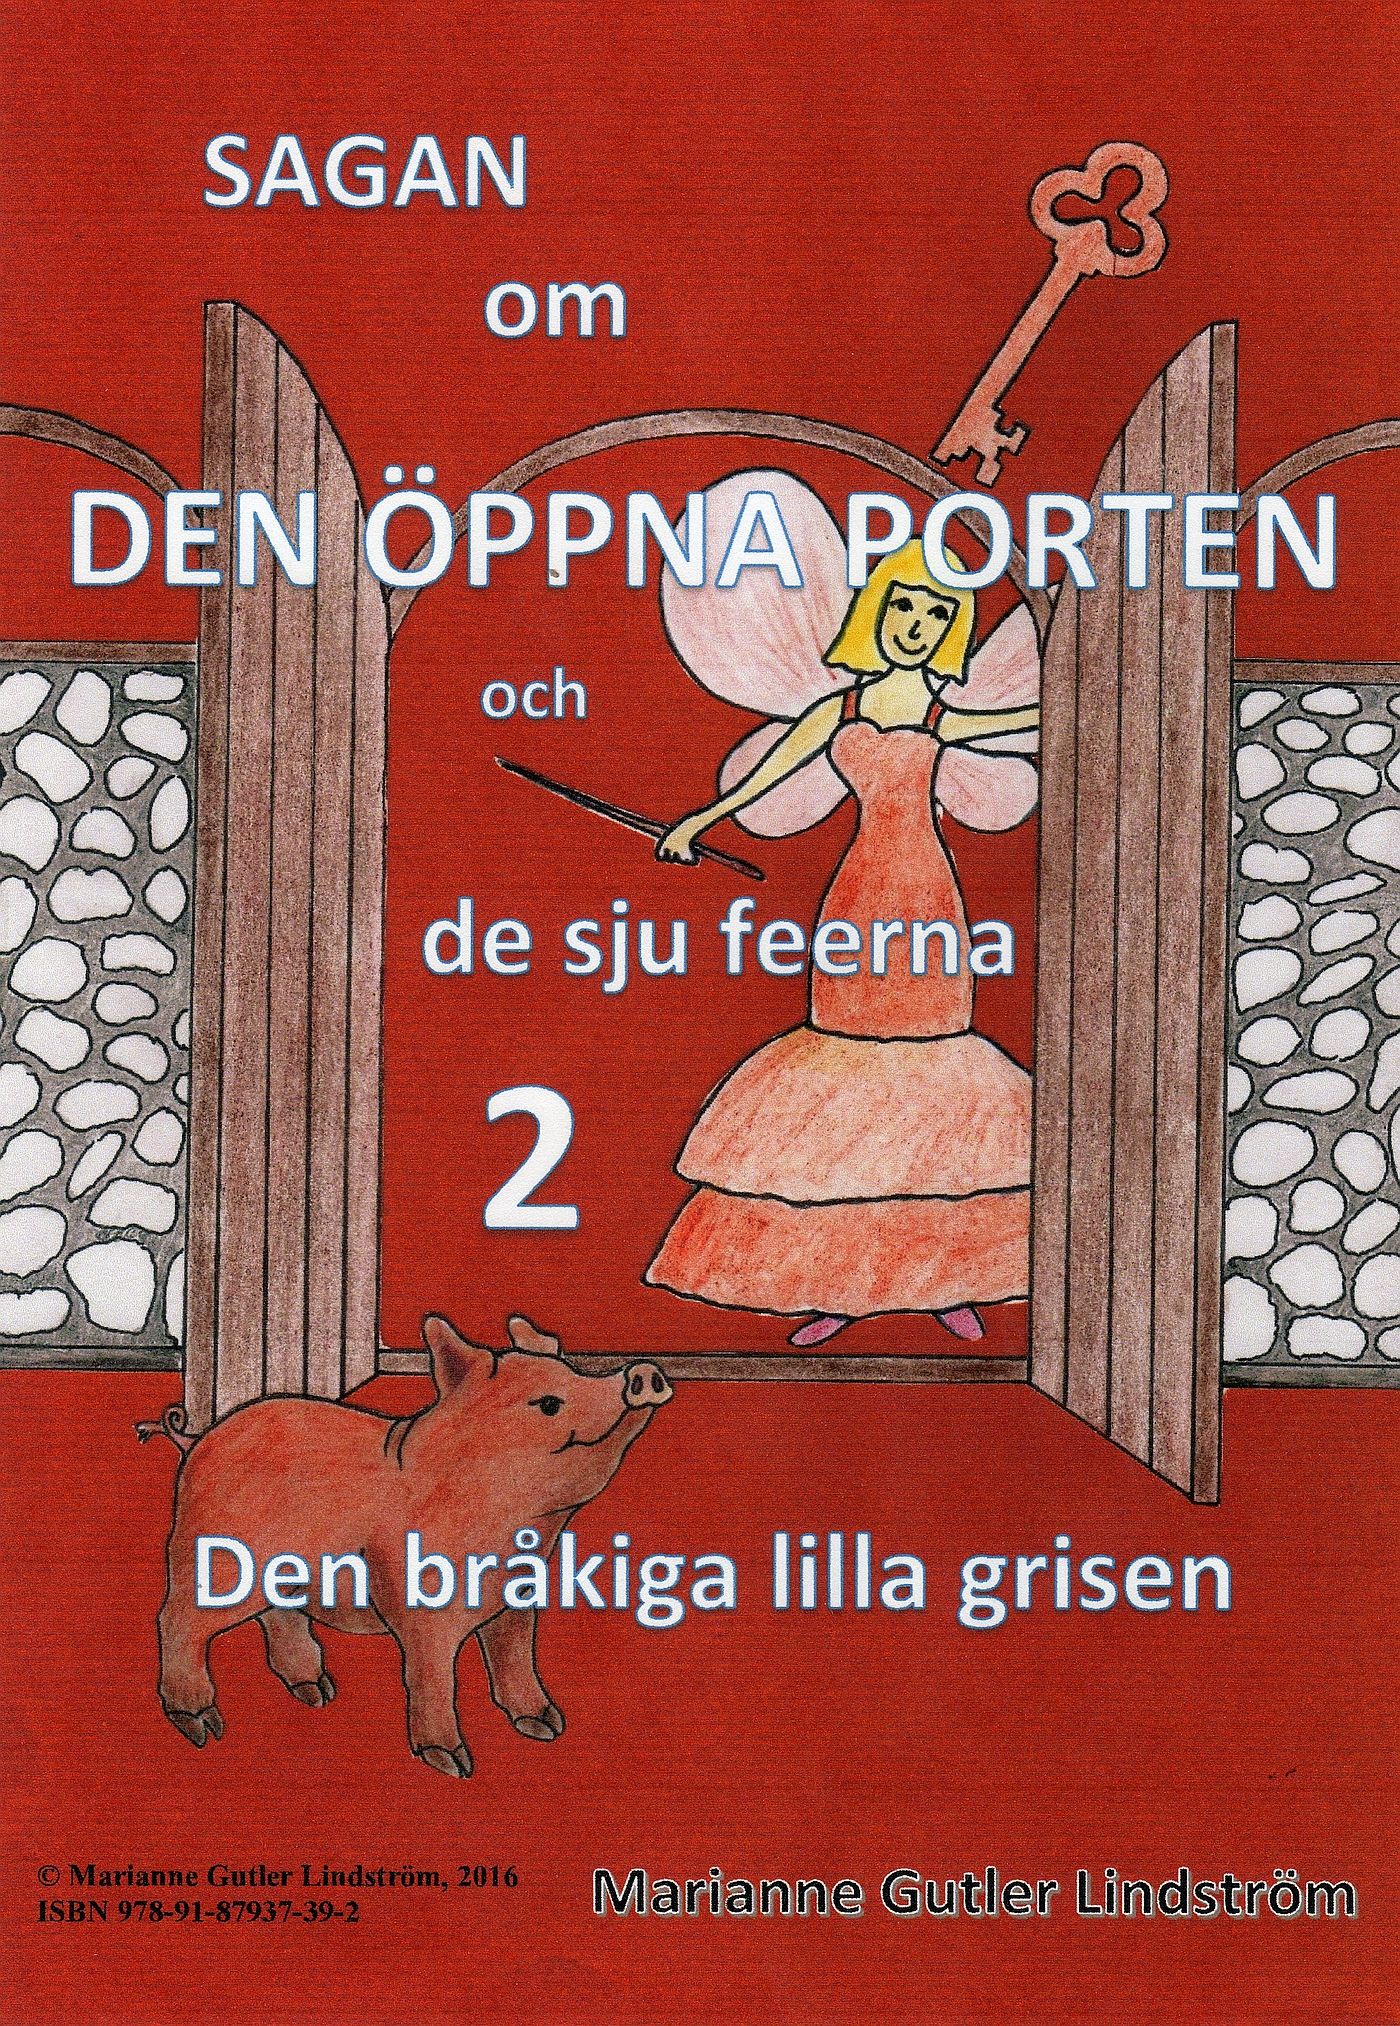 Sagan om den öppna porten 2. Den bråkiga lilla grisen, e-bog af Marianne Gutler Lindström